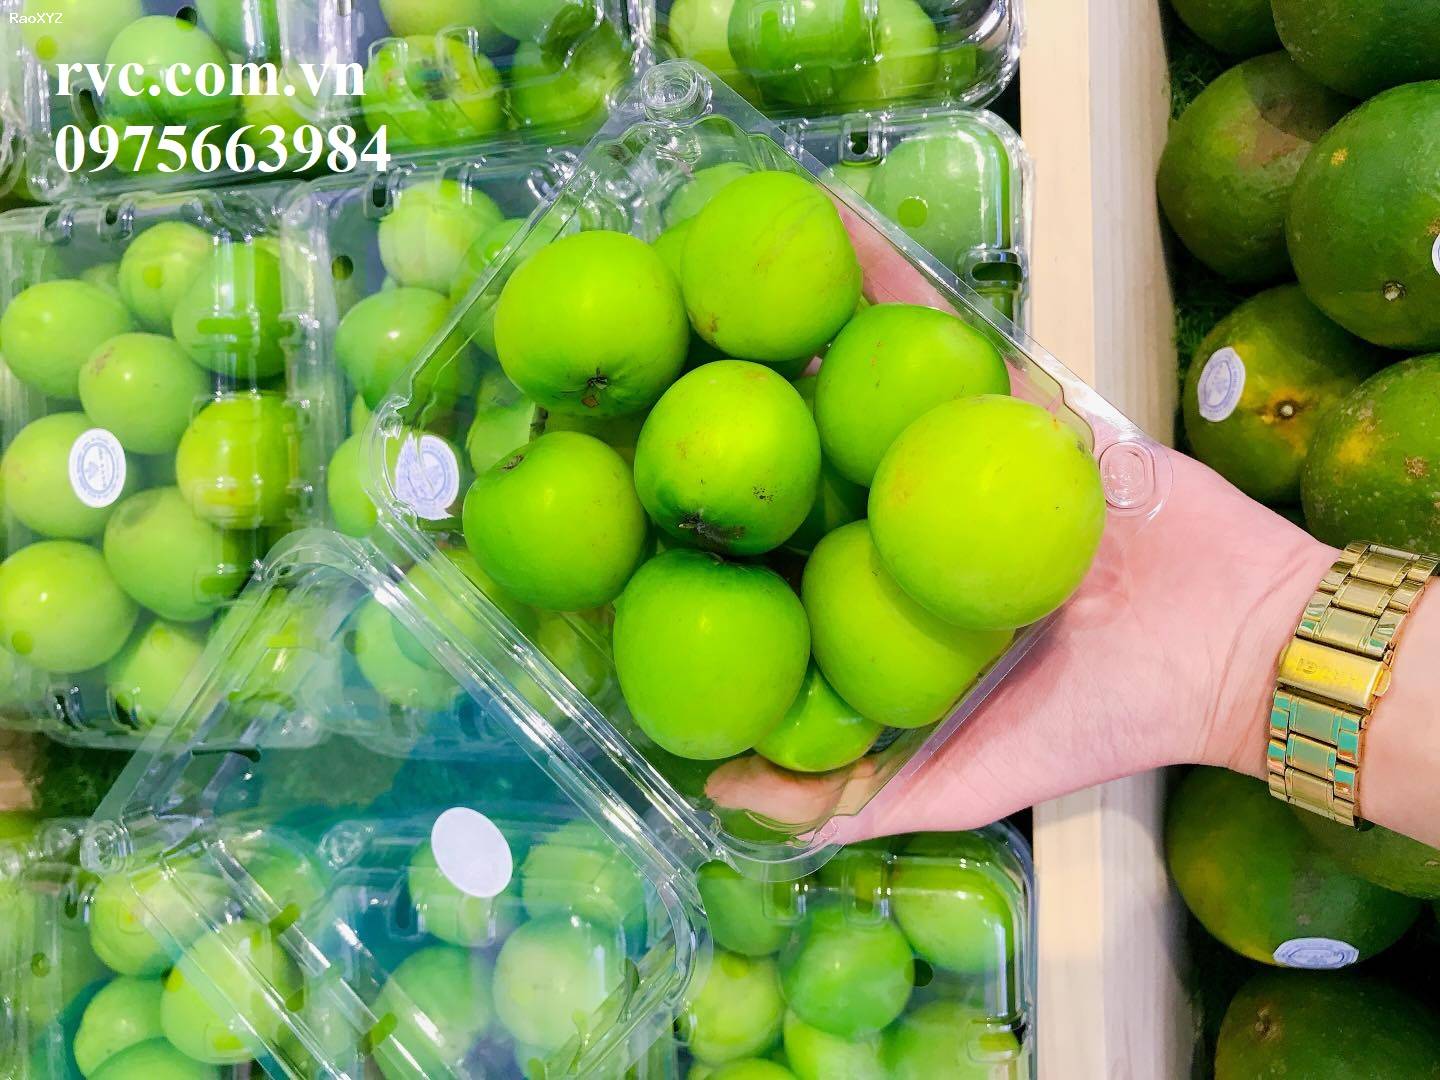 Tuyệt chiêu bảo quản 500g trái cây hiệu quả bằng hộp nhựa P500D